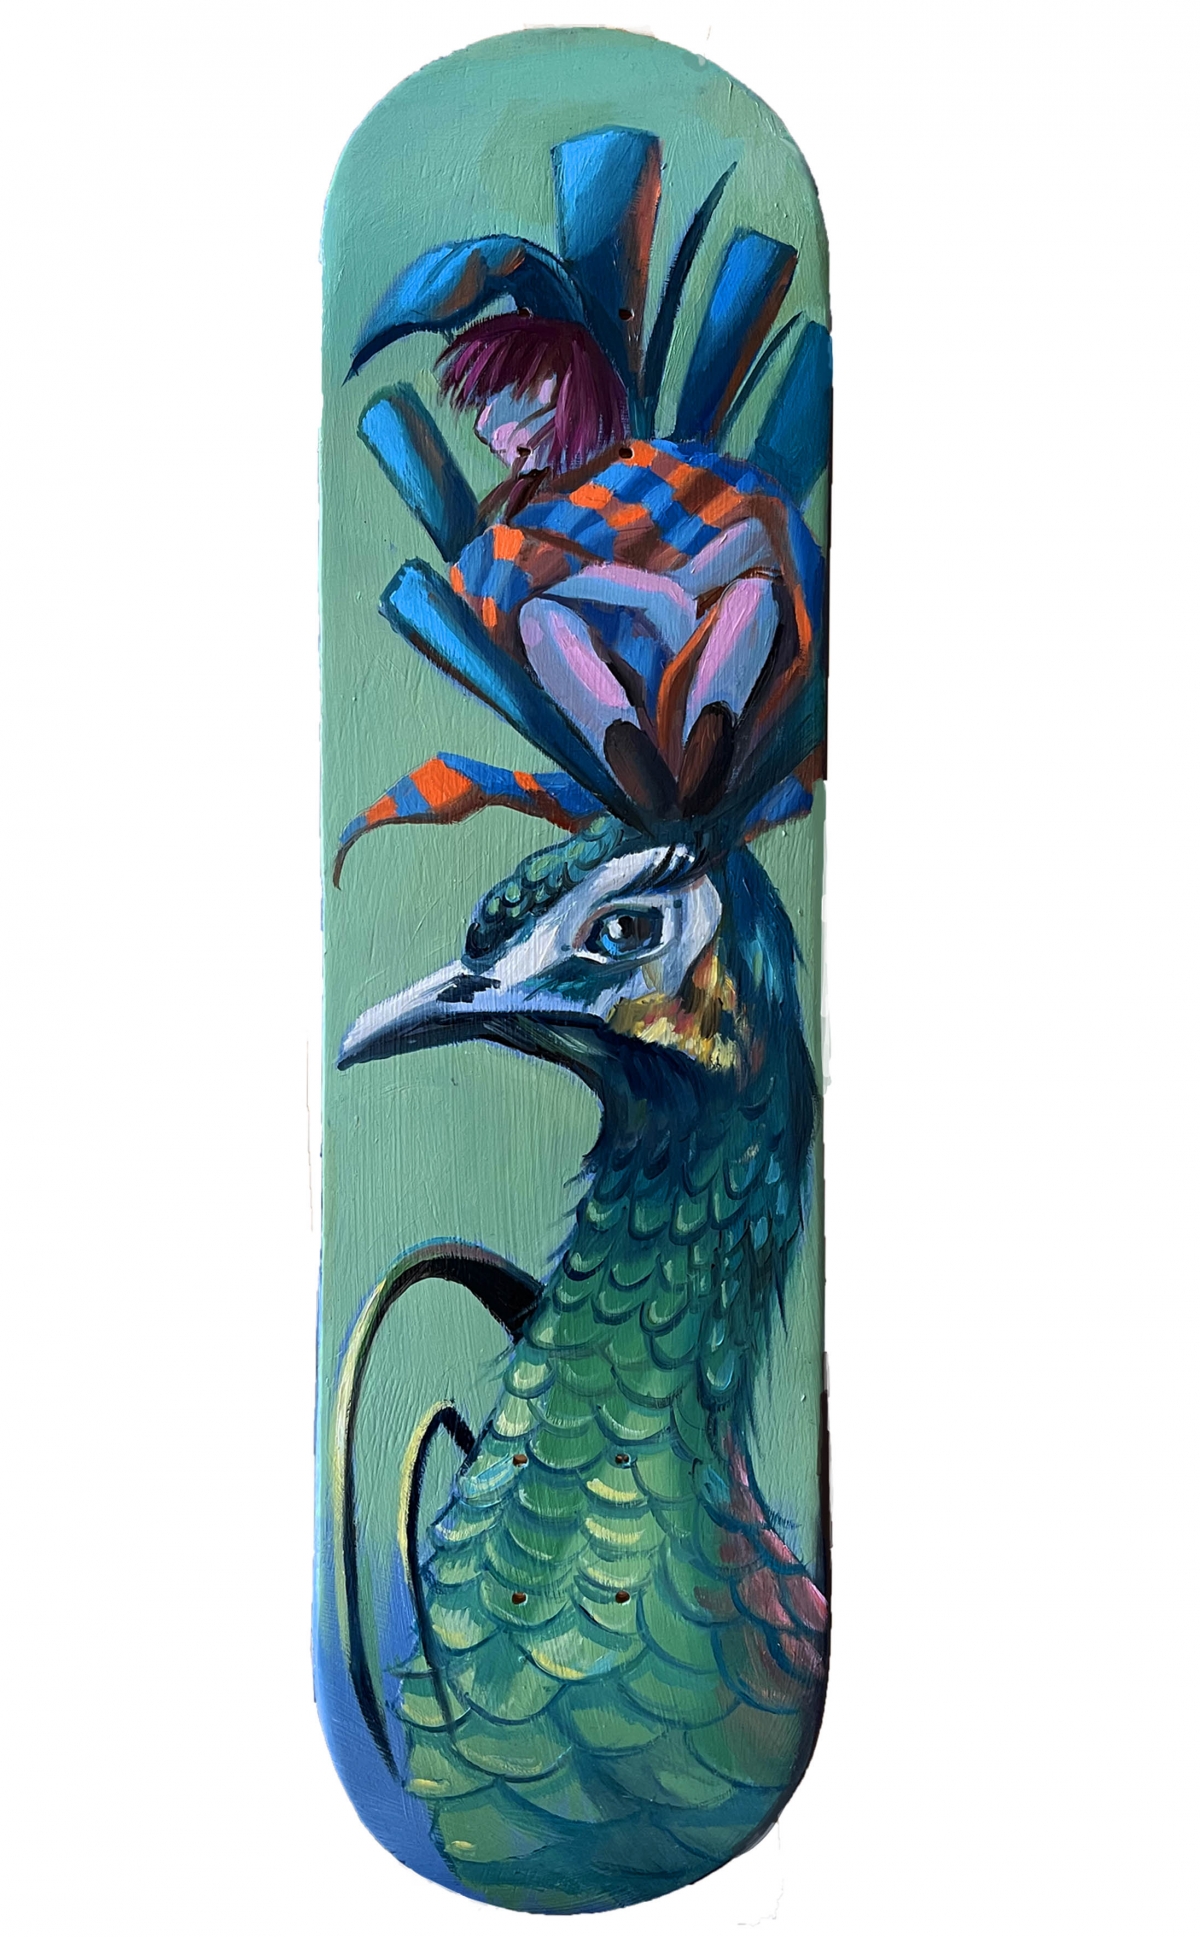 Royal peacock